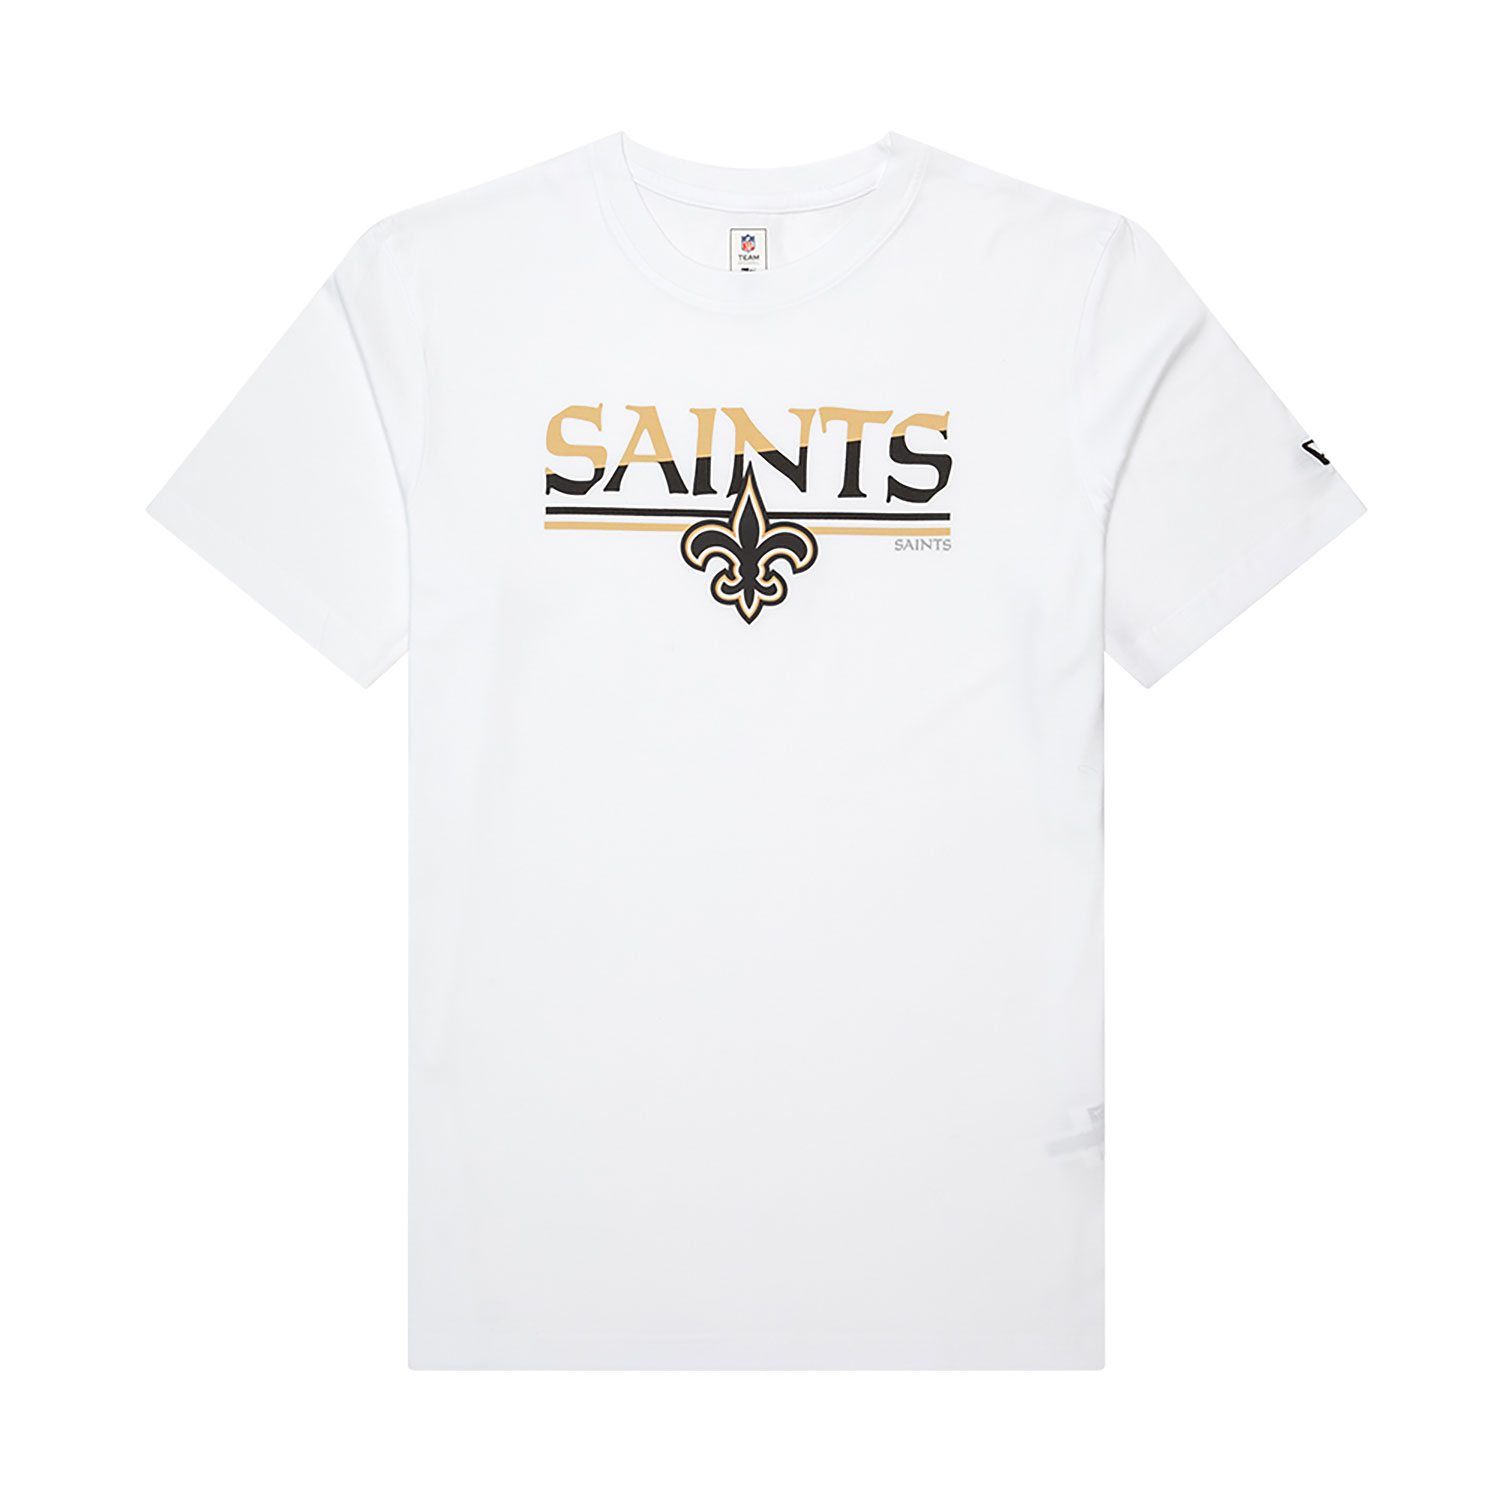 New Orleans Saints Caps, Hats & Clothing